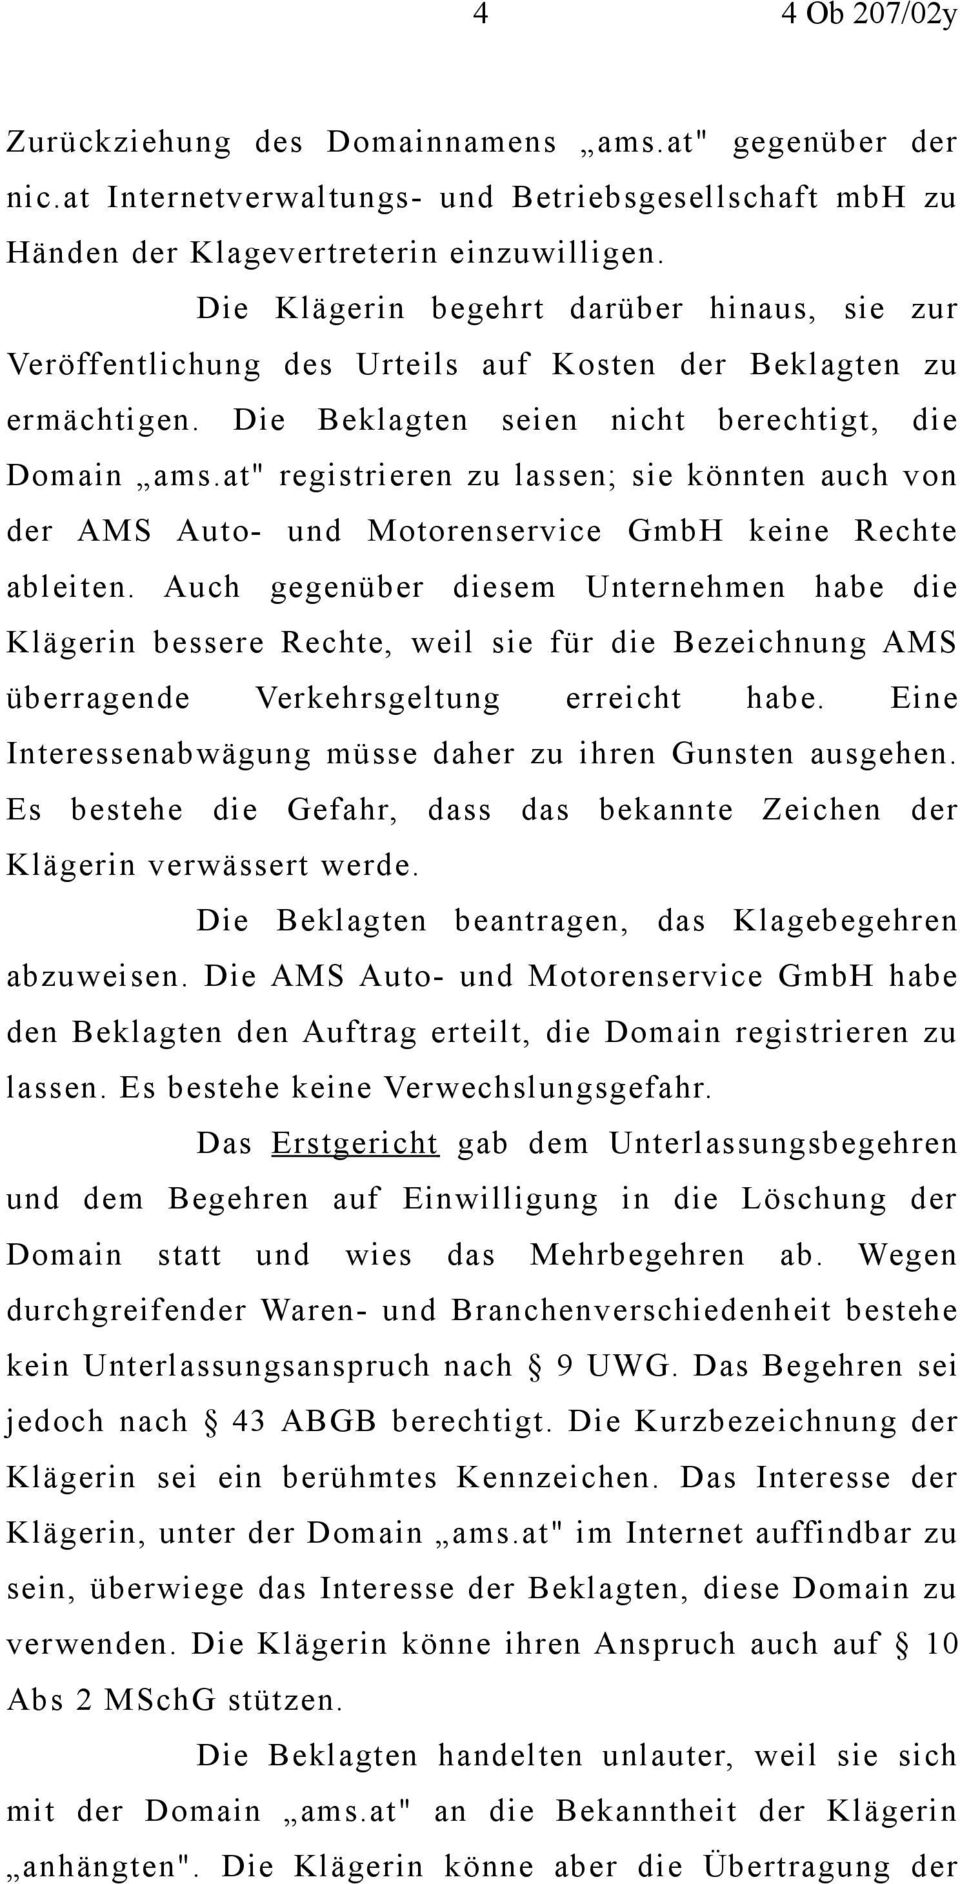 at" registrieren zu lassen; sie könnten auch von der AMS Auto- und Motorenservice GmbH keine Rechte ableiten.